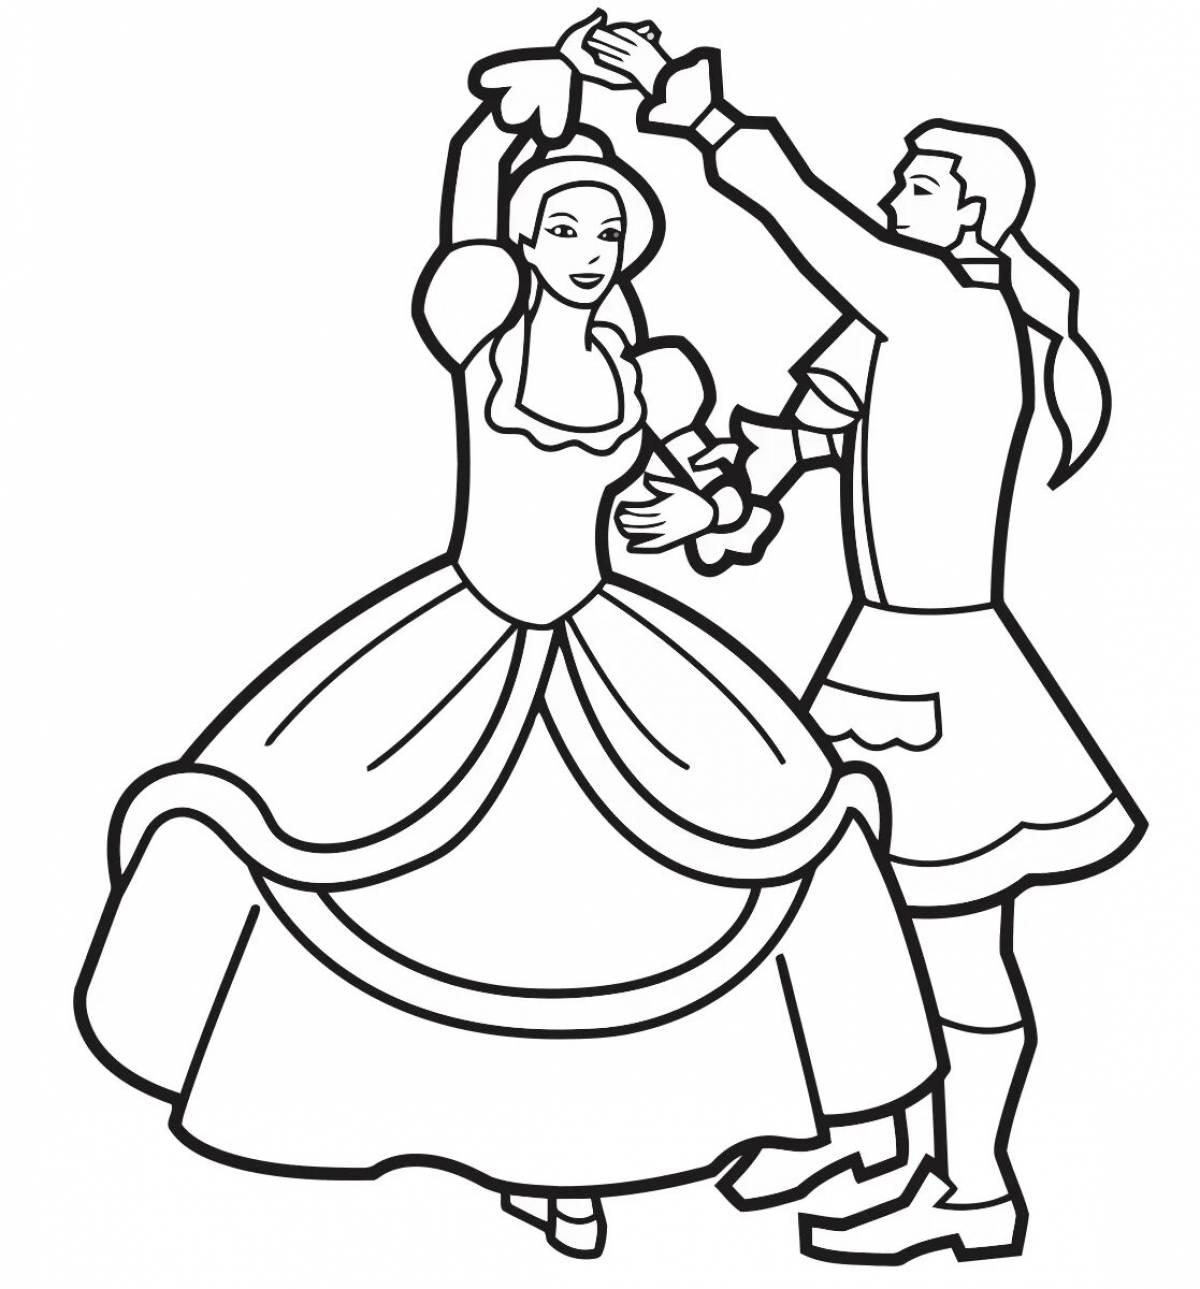 Бал нарисовать 5 класс легко. Раскраска бал. Раскраска танцы. Средневековый бал раскраска. Танцы раскраска для детей.